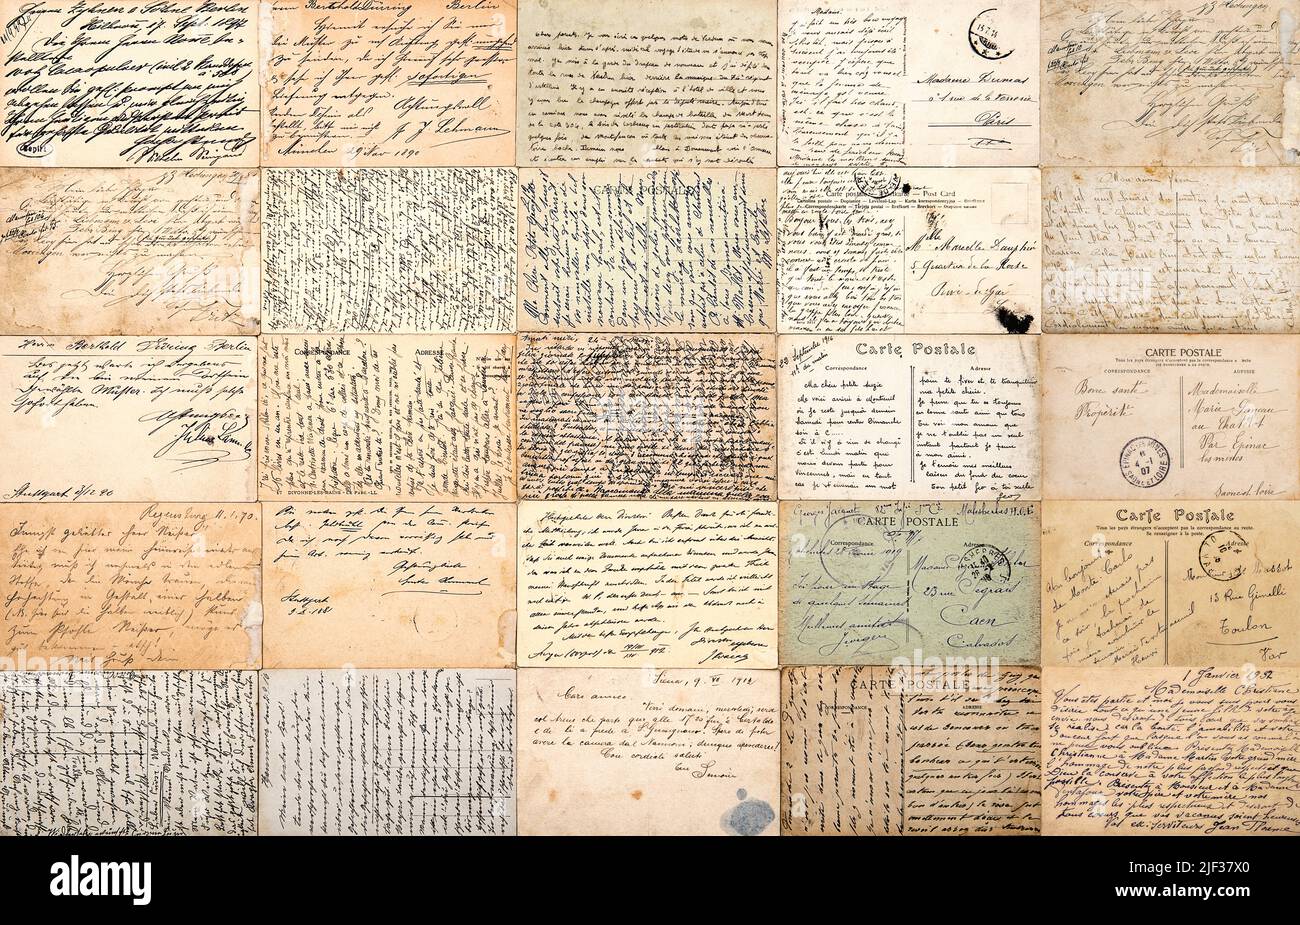 Arrière-plan de texture de papier usagé vintage. Cartes postales anciennes. Ancienne écriture manuscrite Banque D'Images